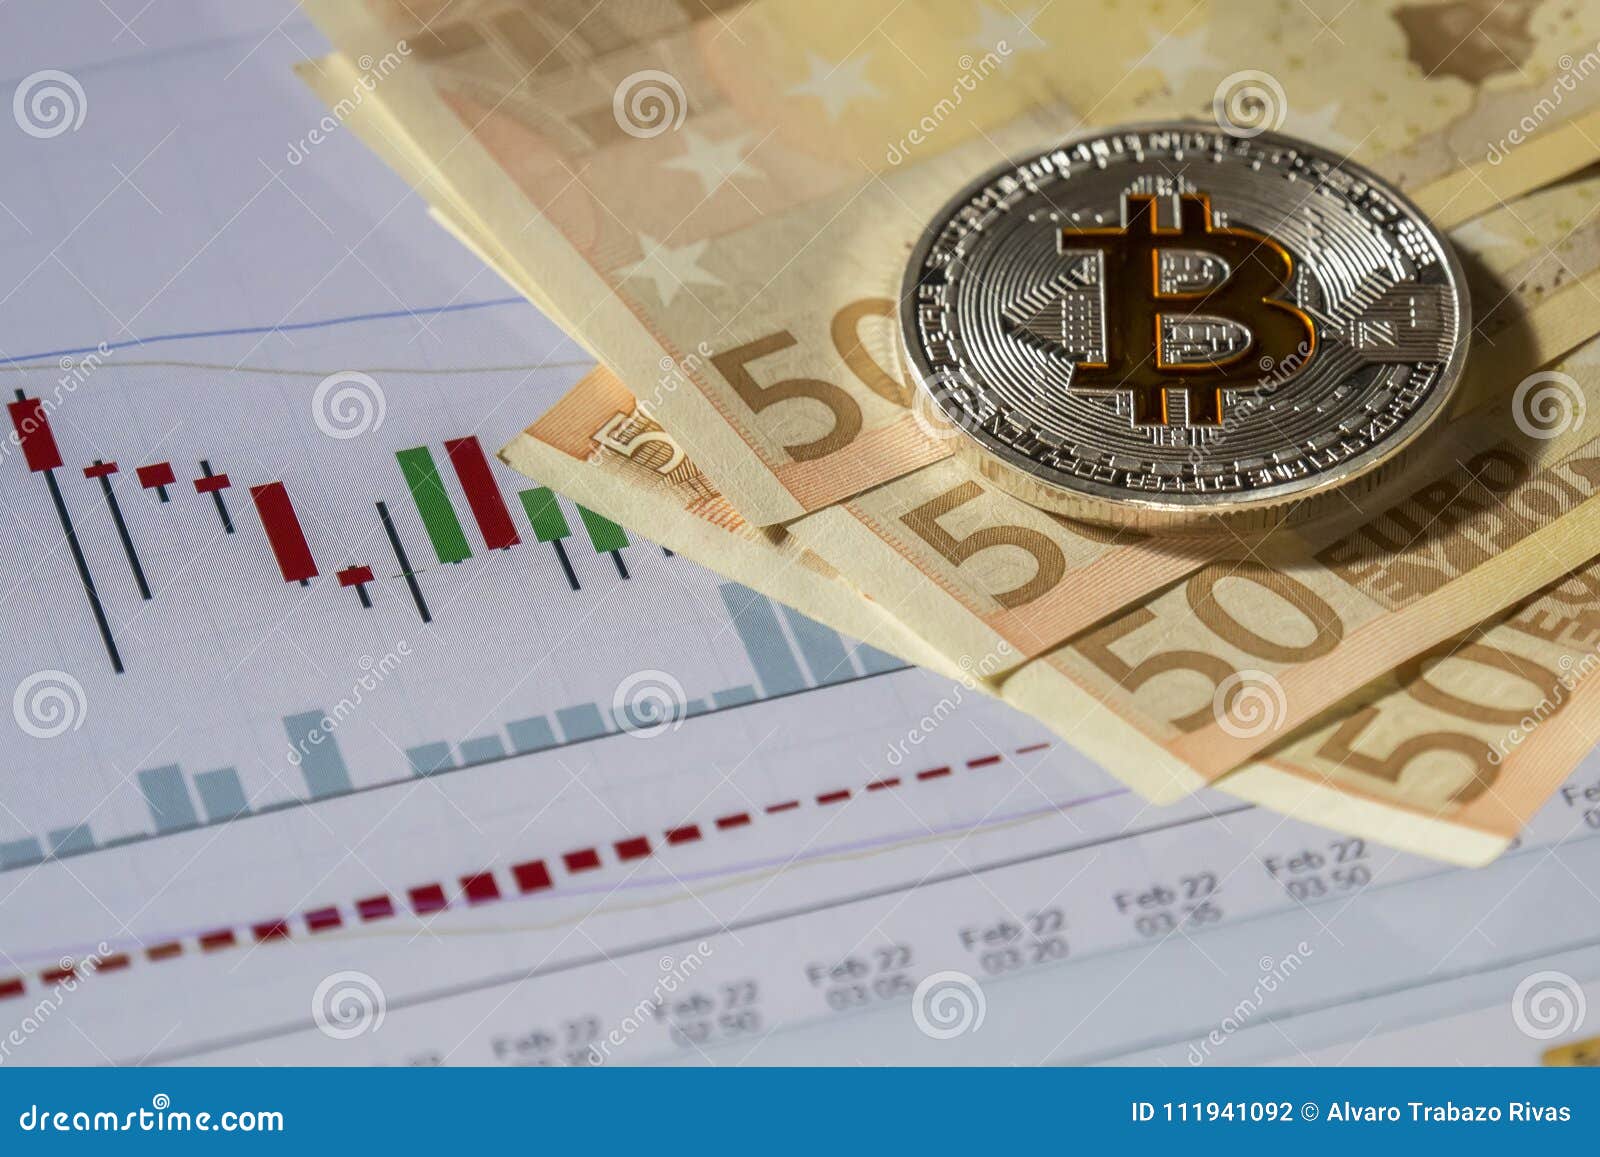 trading euro bitcoin)